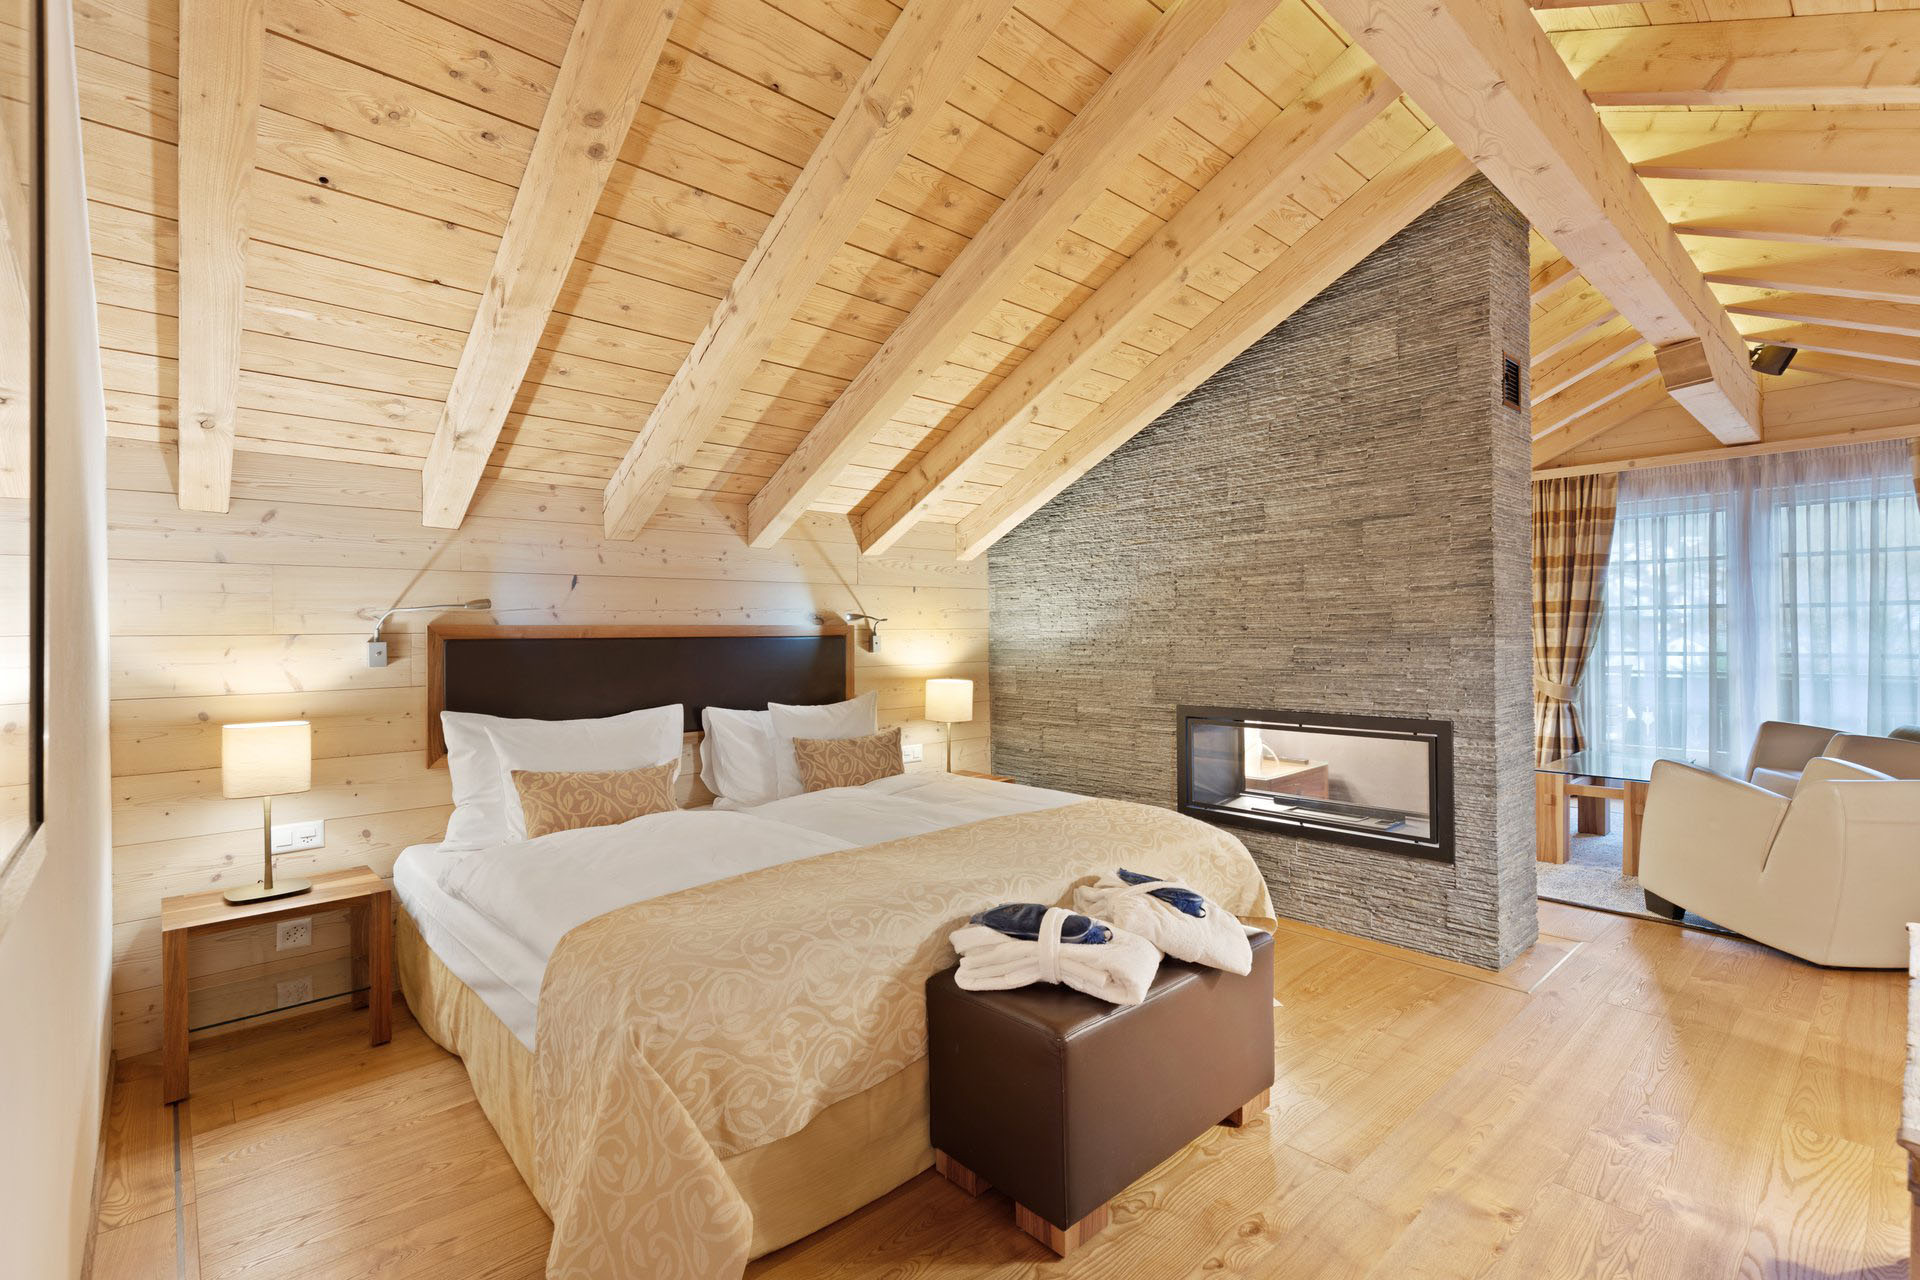 Chalet Suite Matterhorn Bedroom - Grand Hotel Zermatterhof